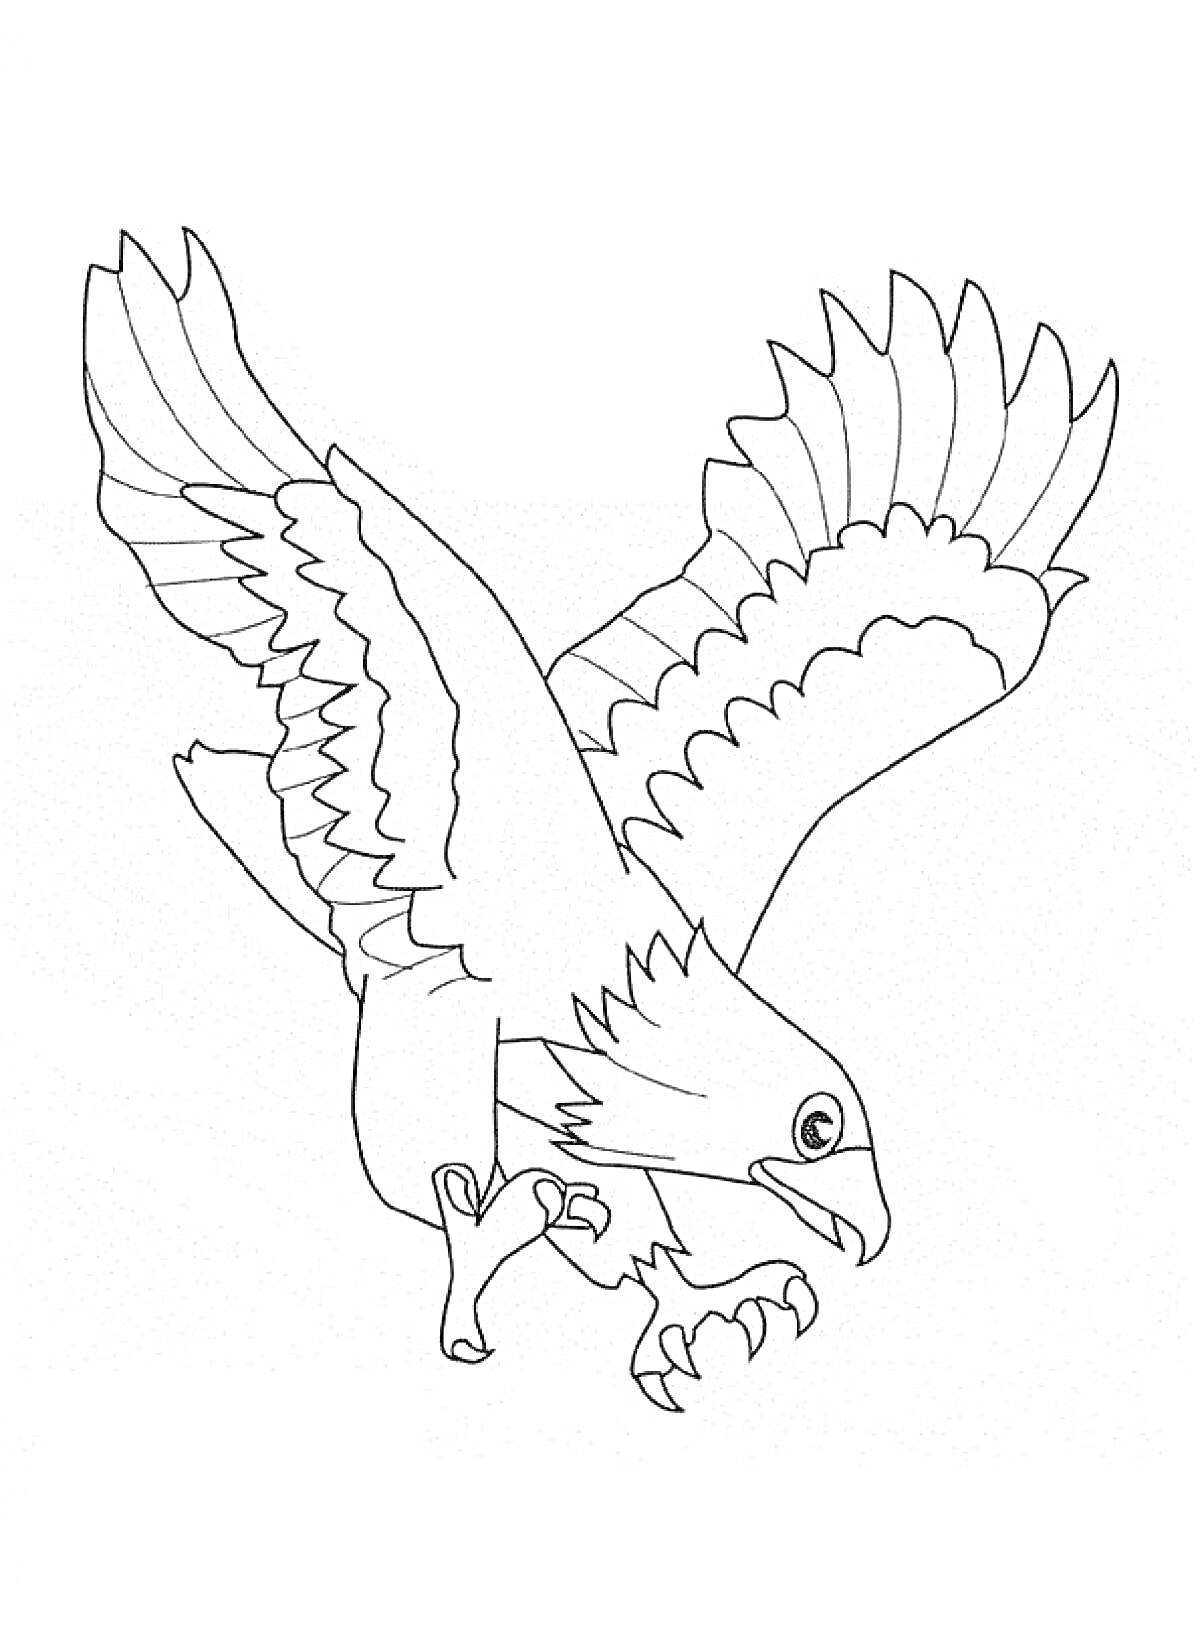 Раскраска Орел в полете с расправленными крыльями и когтями